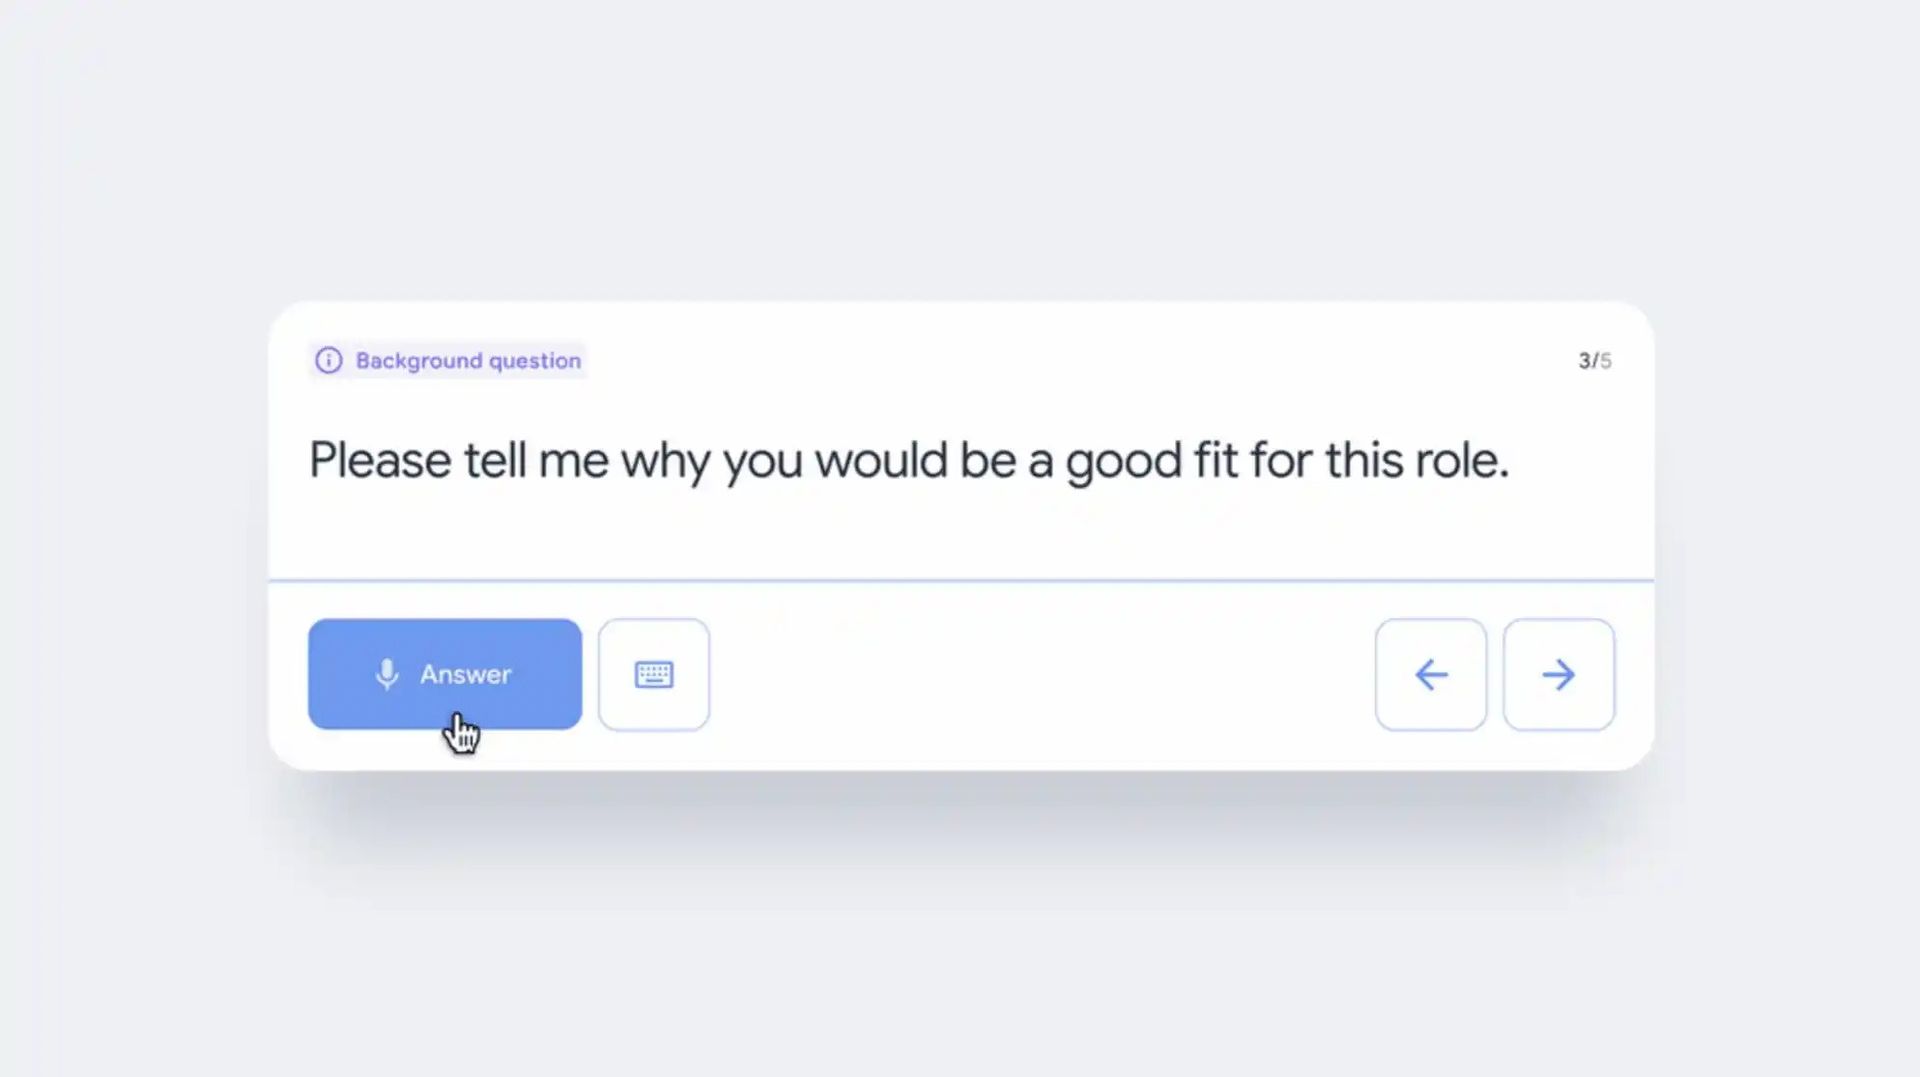 Wenn Sie vor einem Vorstellungsgespräch nervös sind, hilft Ihnen das neue KI-Tool namens Google Interview Warmup, vorher zu üben.  Google hat jetzt ein Tool, das Kandidaten beim Üben von Vorstellungsgesprächen unterstützt.  Es ist wahr, dass Vorstellungsgespräche stressig sein können.  Dank des neuen Tools von Google können Sie üben und besser vorbereitet sein, bevor Sie zu einem Vorstellungsgespräch gehen.